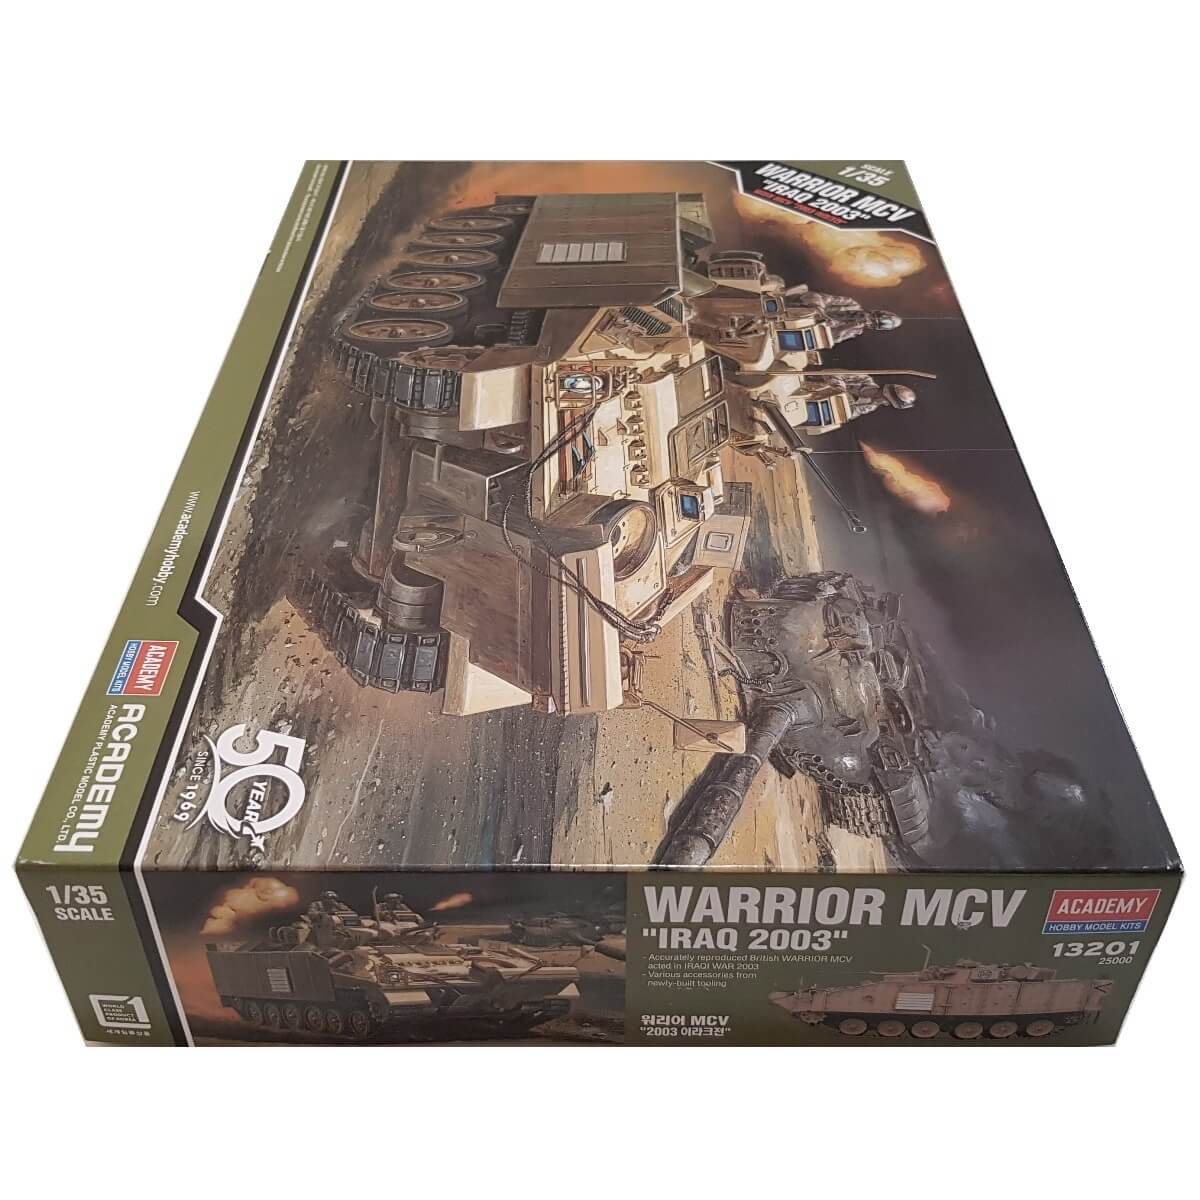 1:35 Warrior MCV - IRAQ 2003 - ACADEMY